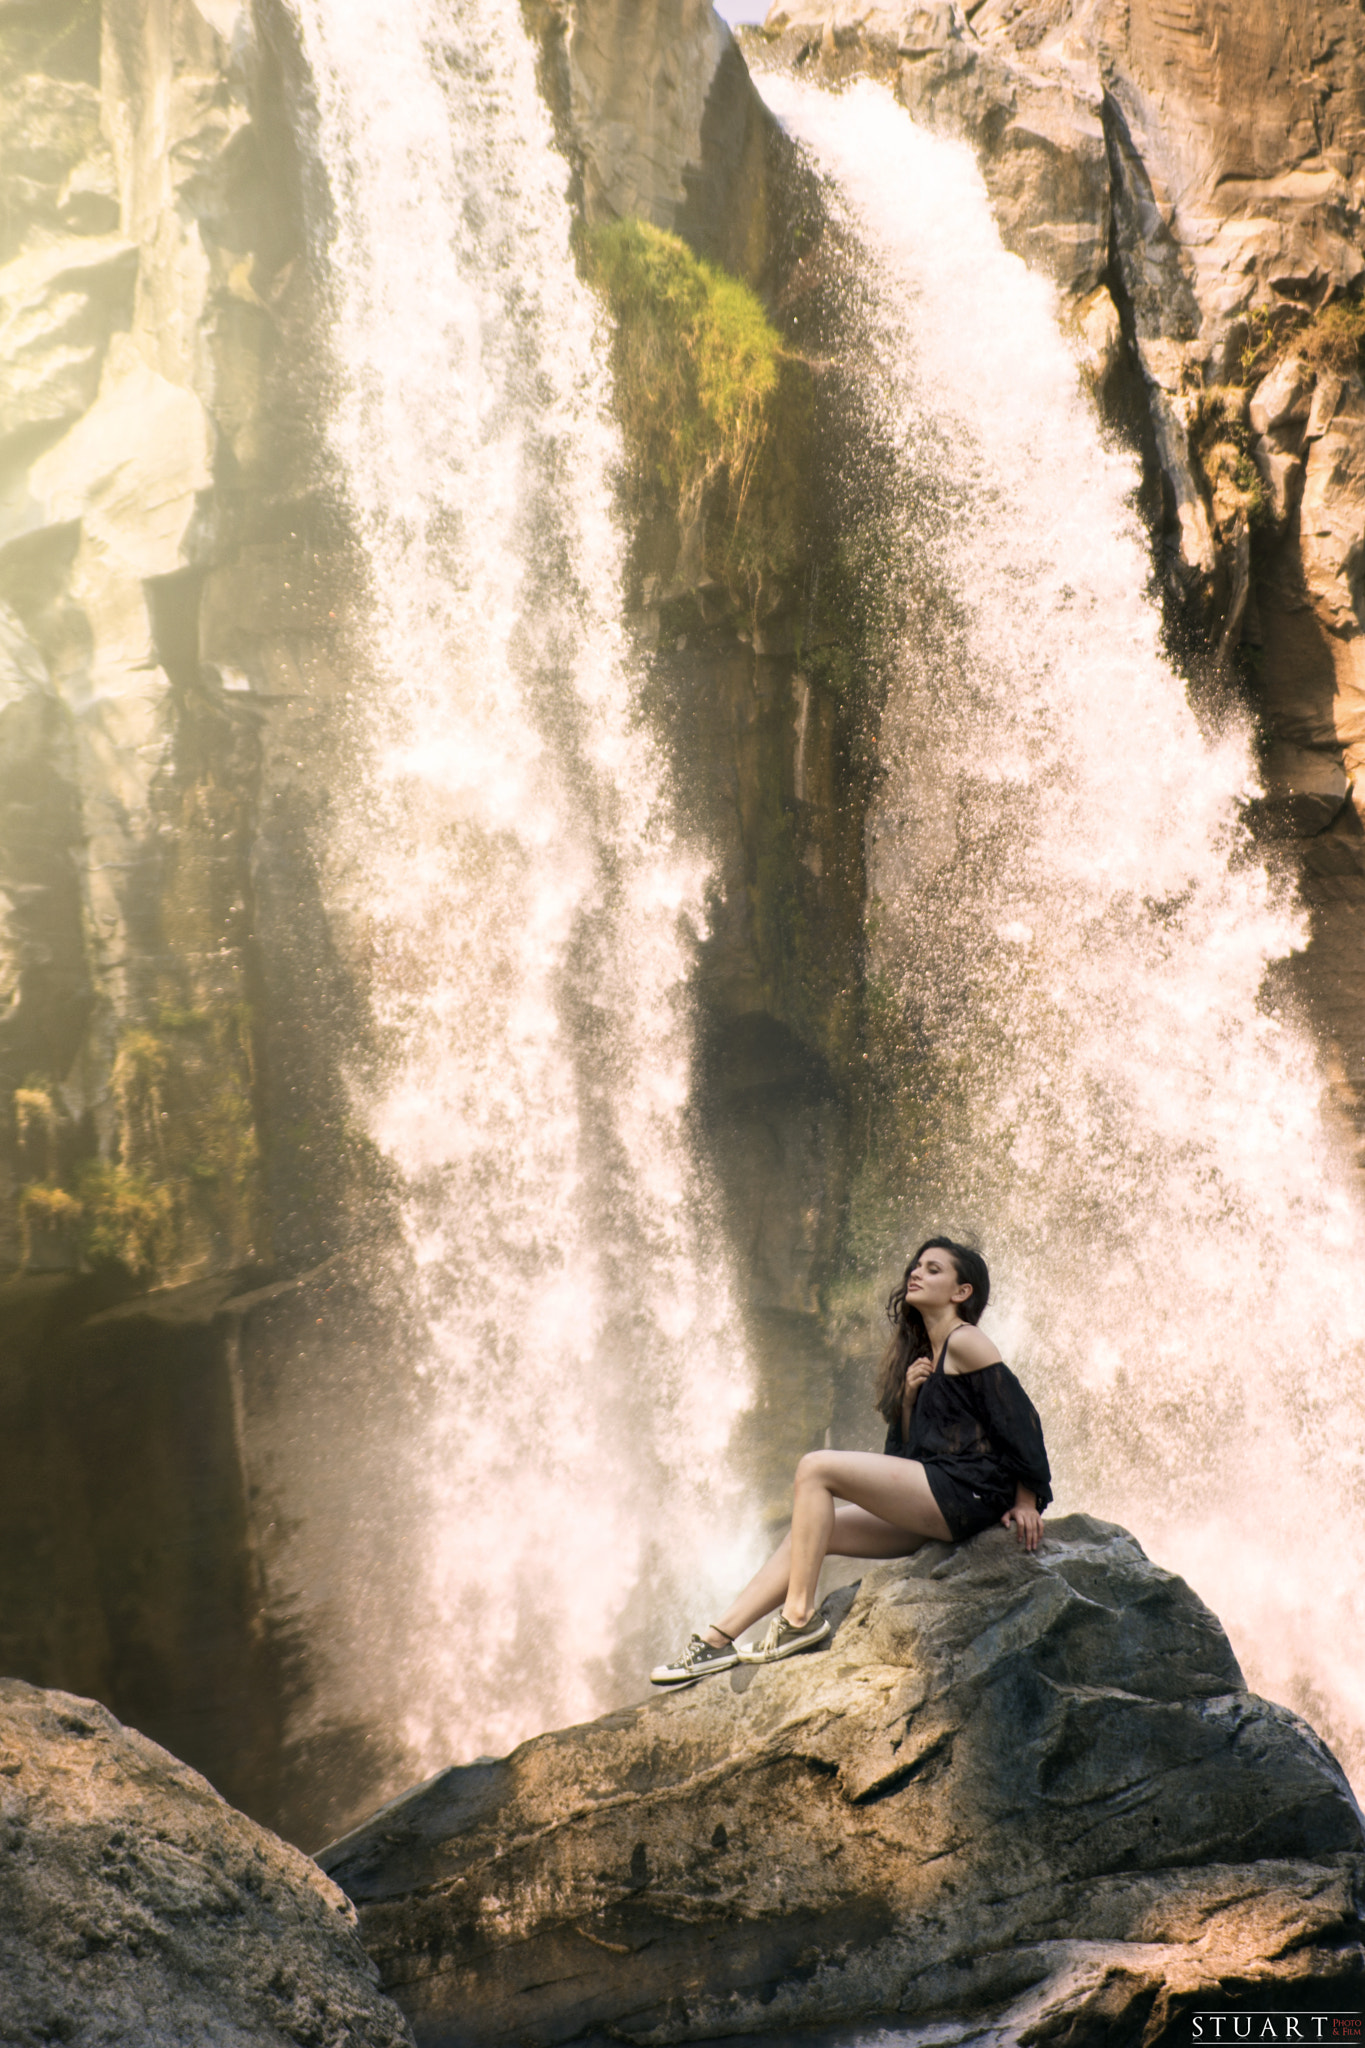 Nikon D7200 sample photo. Waterfall los amates, guatemala photography